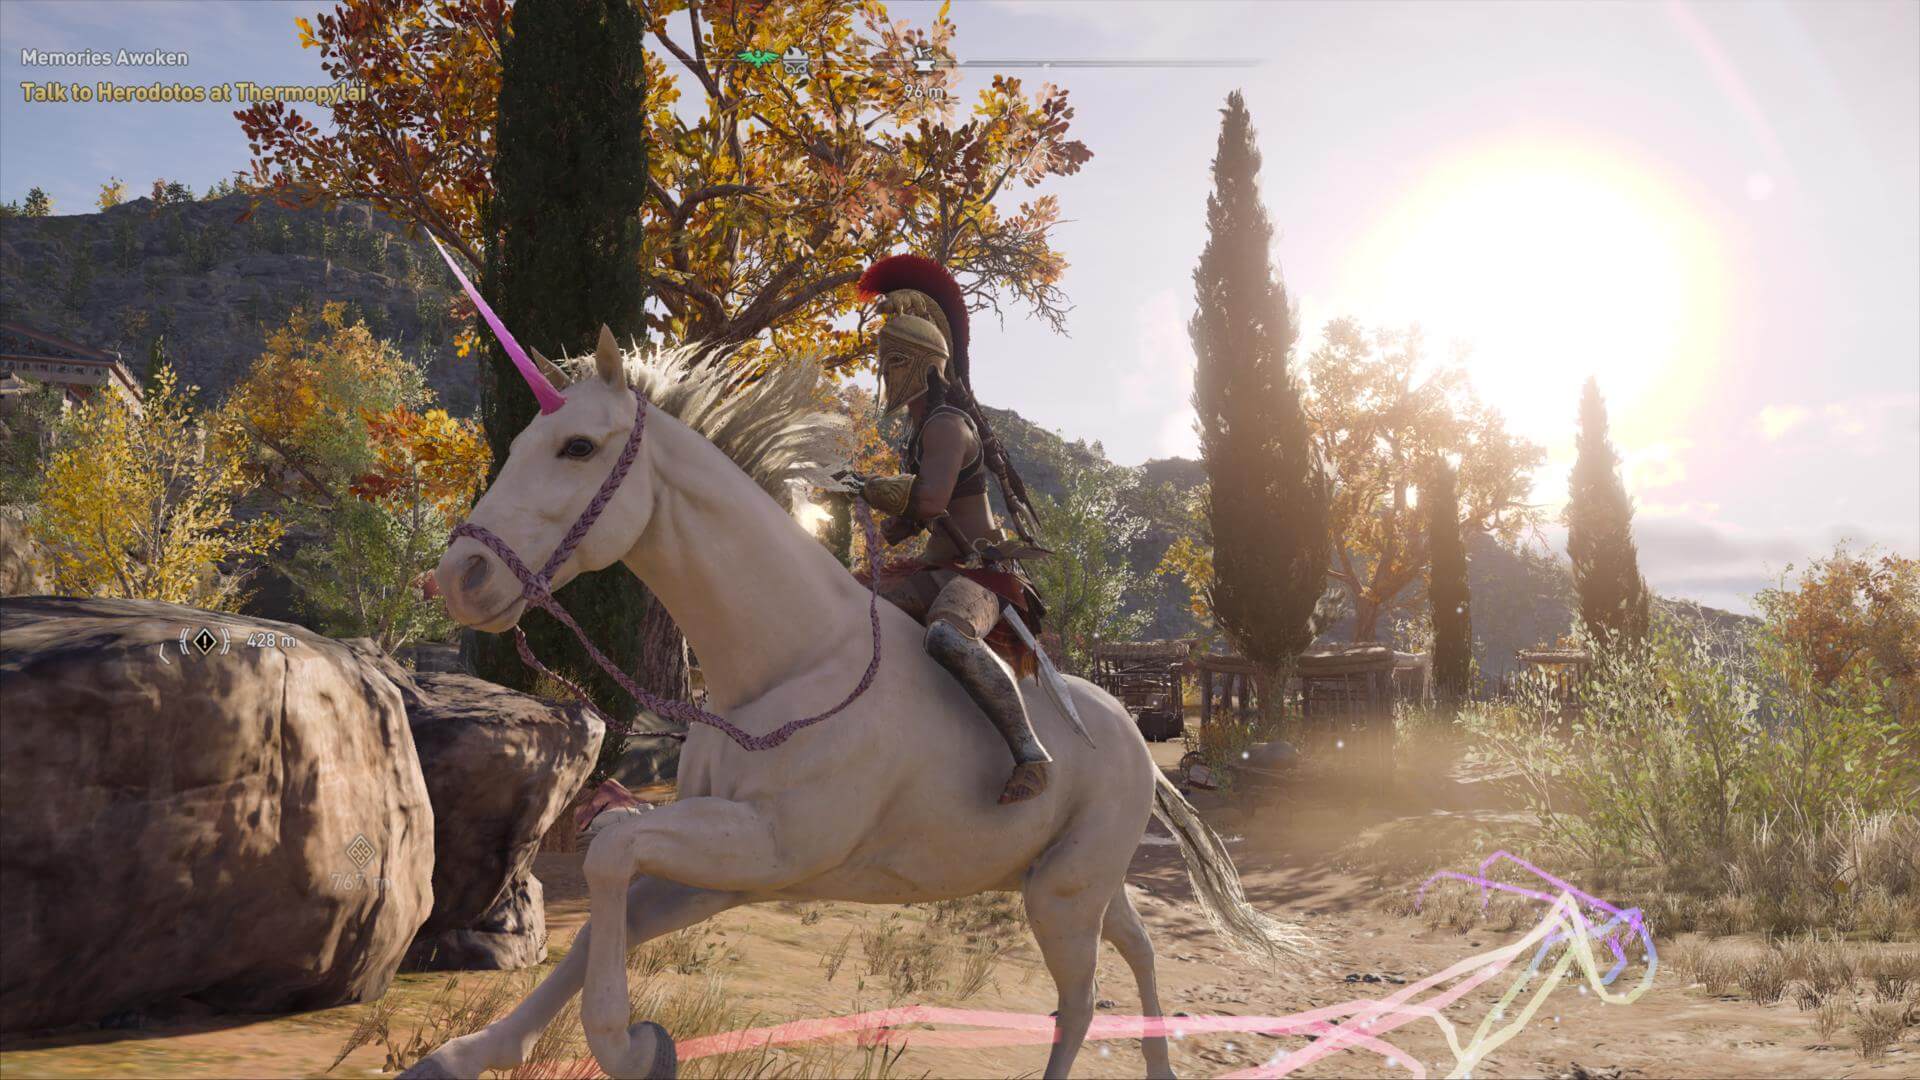 Usamos um cavalo com esqueleto humano em Assassin's Creed e nem sabíamos